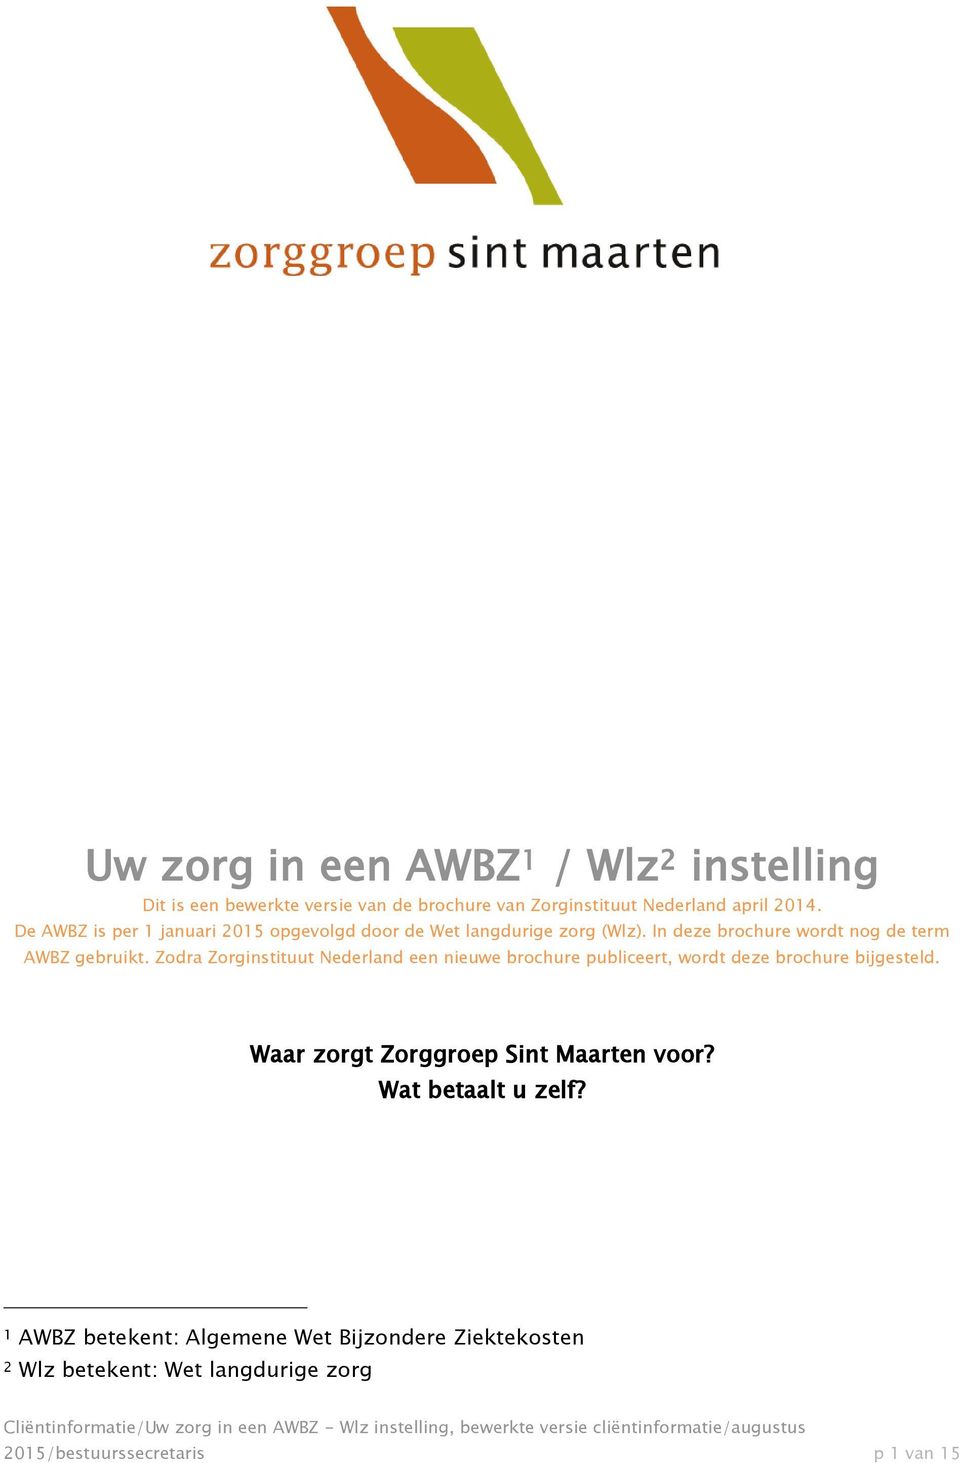 Zodra Zorginstituut Nederland een nieuwe brochure publiceert, wordt deze brochure bijgesteld.